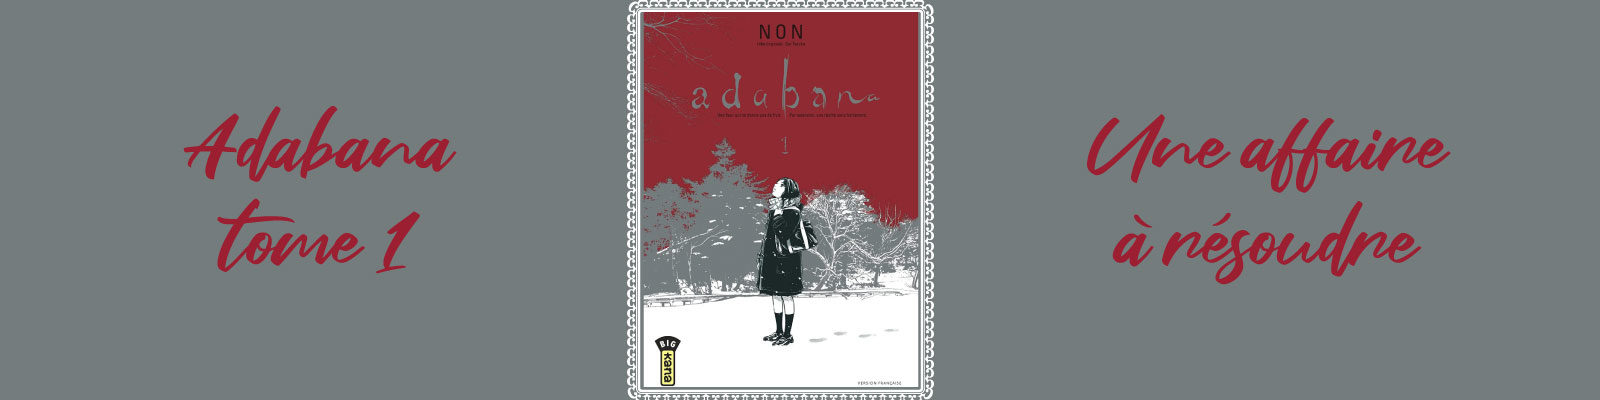 Adabana-Vol.-1-2